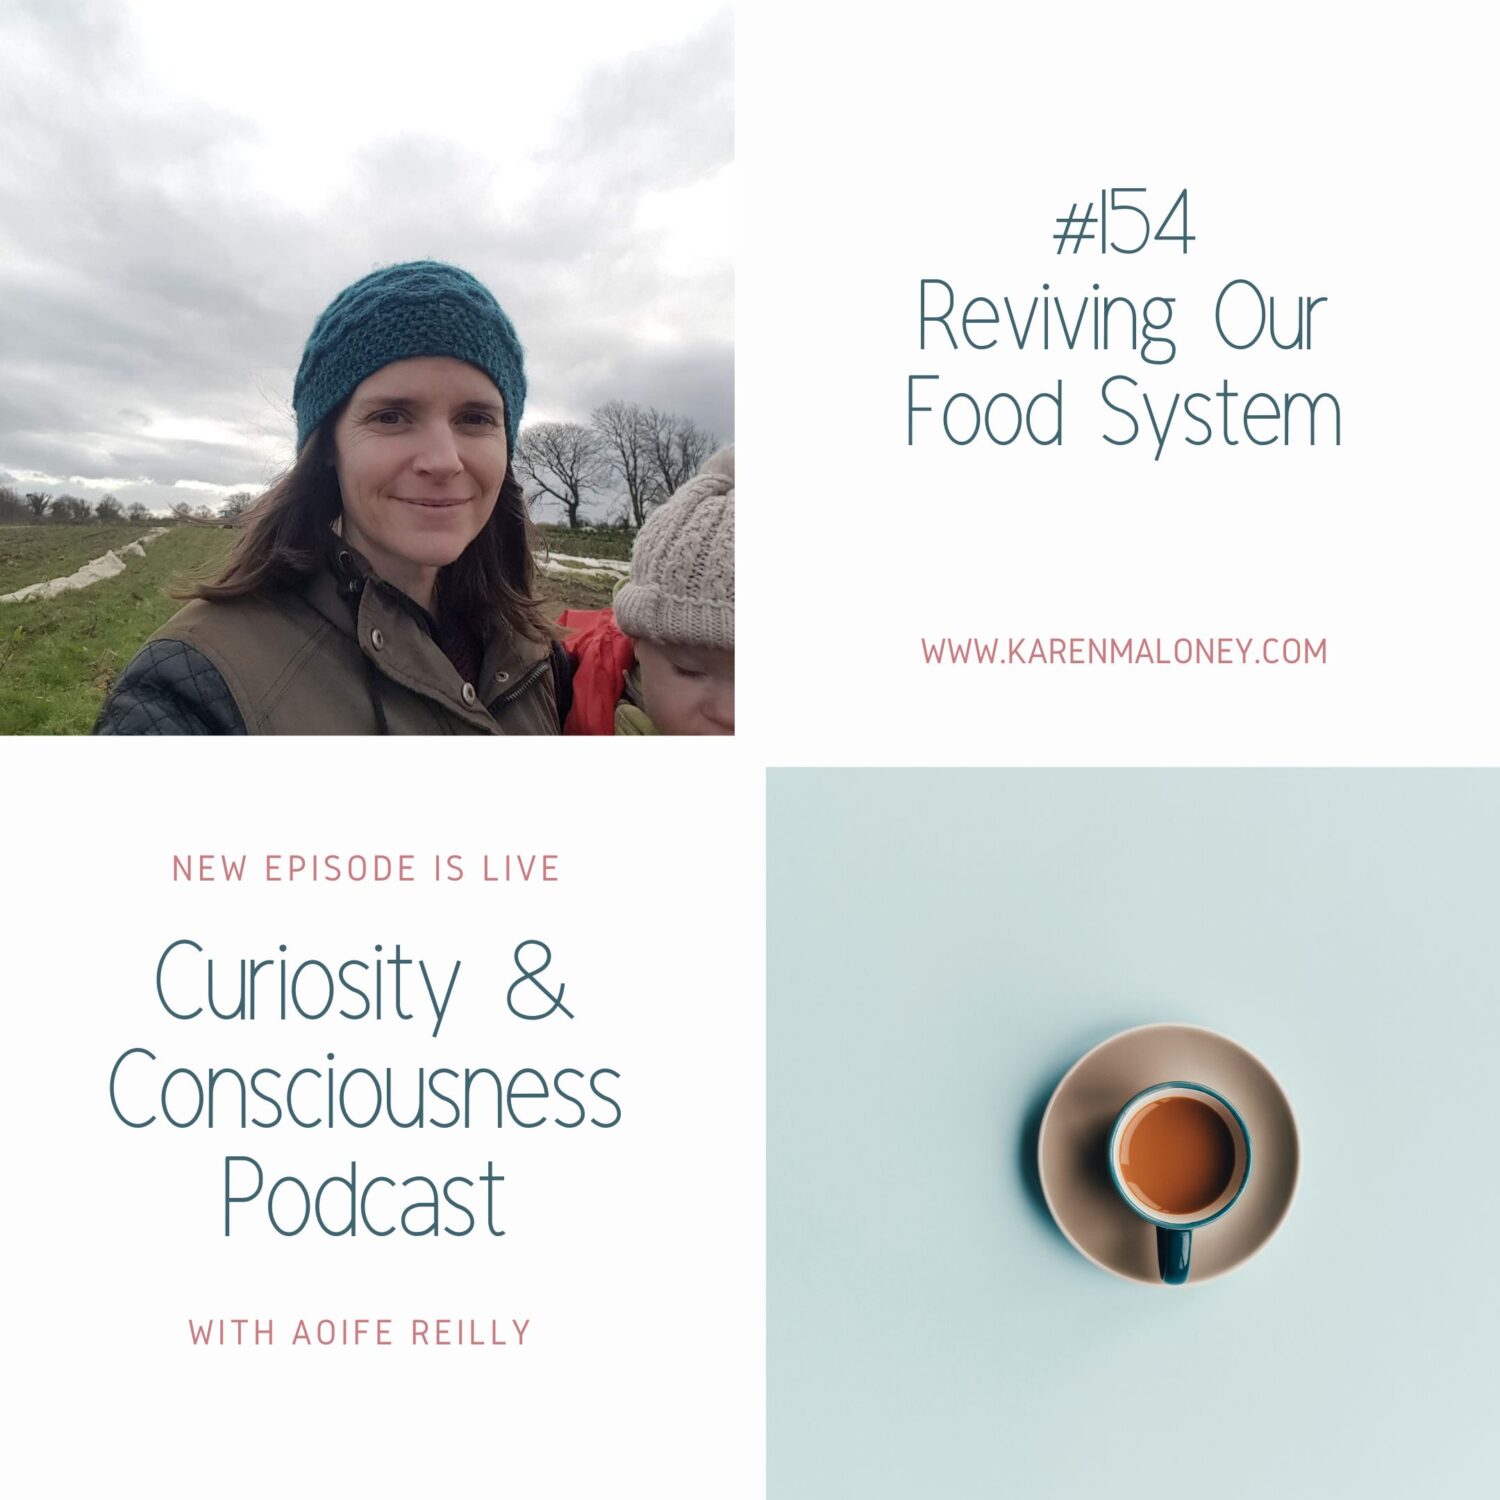 Aoife Reilly podcast